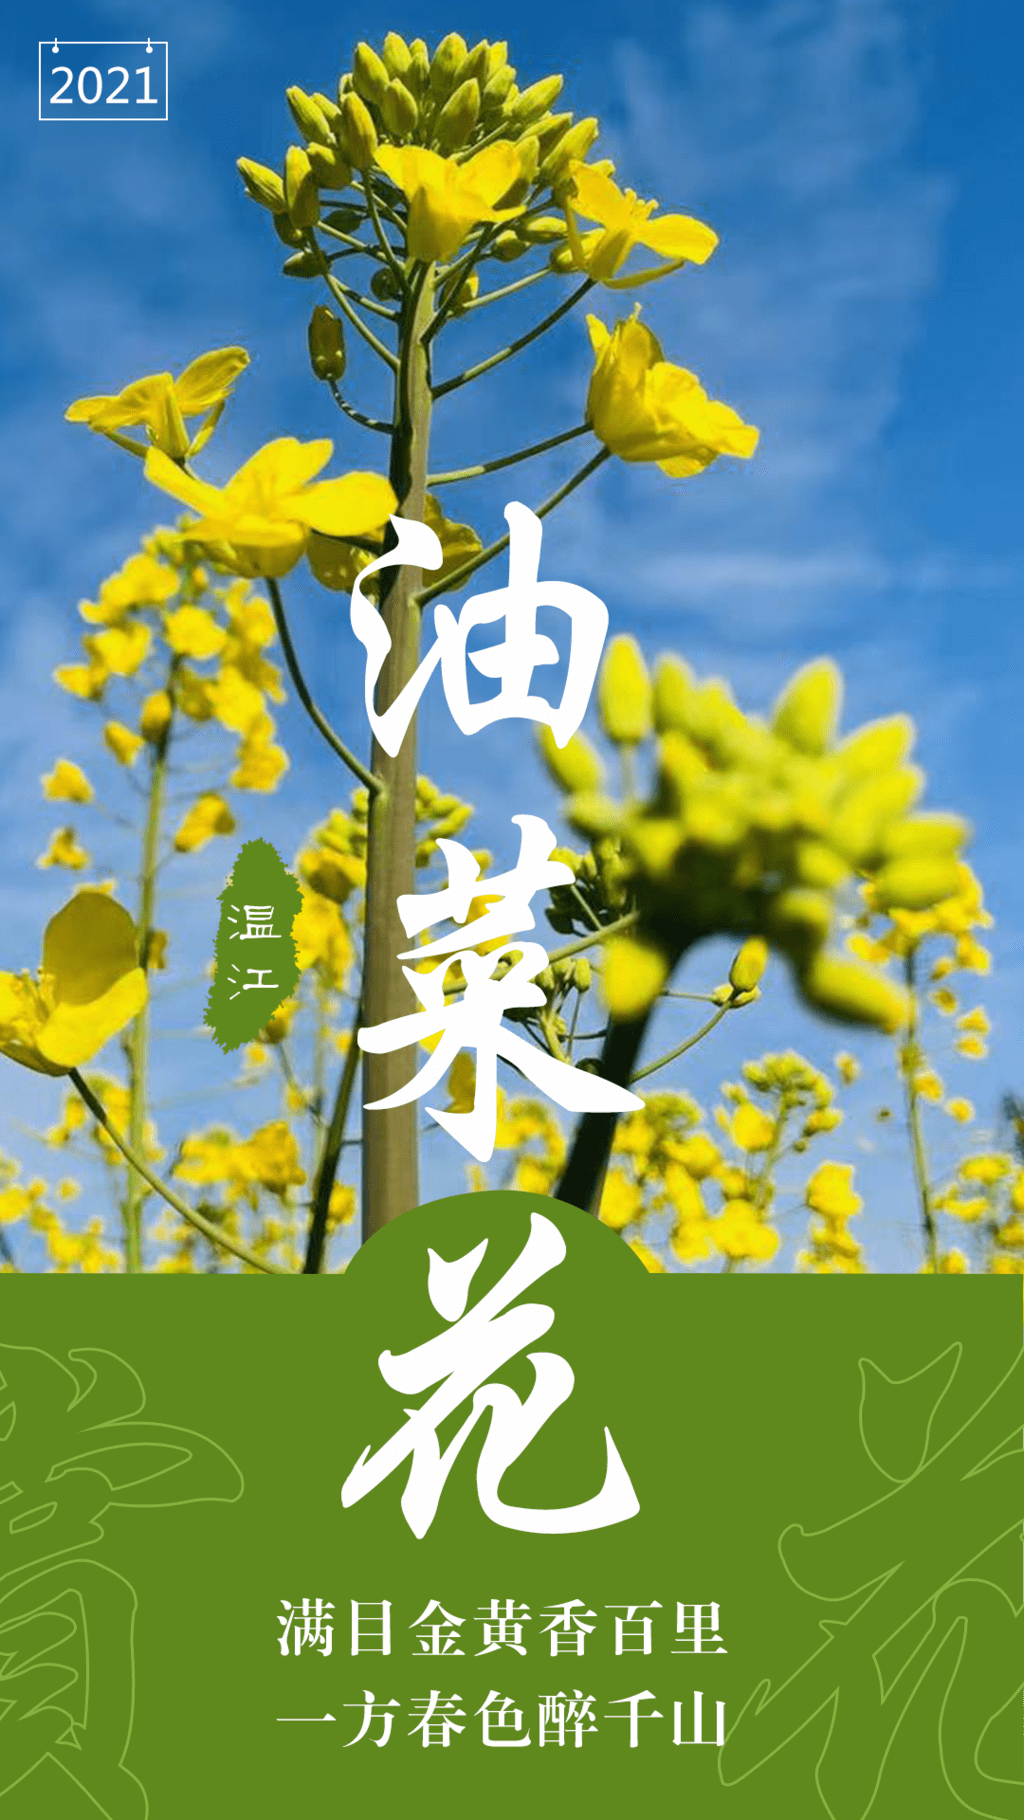 成都市温江区赏花地图上线，带你看“花花世界”